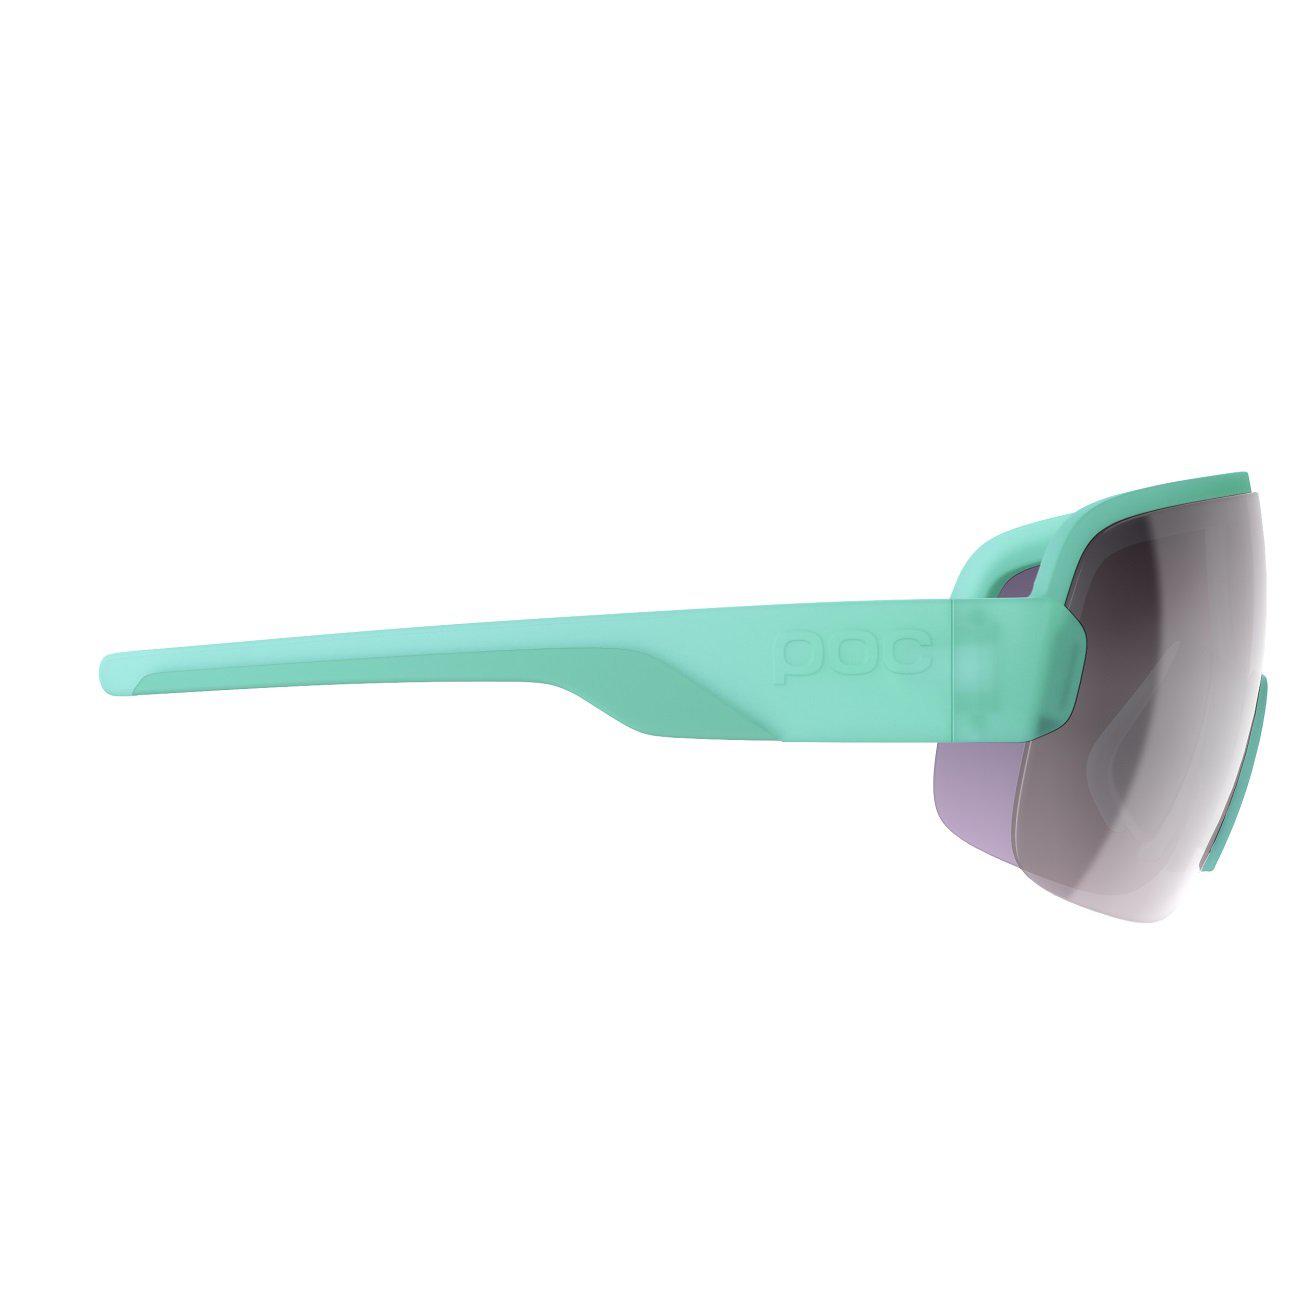 POC Aim Sportbrille Fluorite Green Violet Silver Mirror-Runster